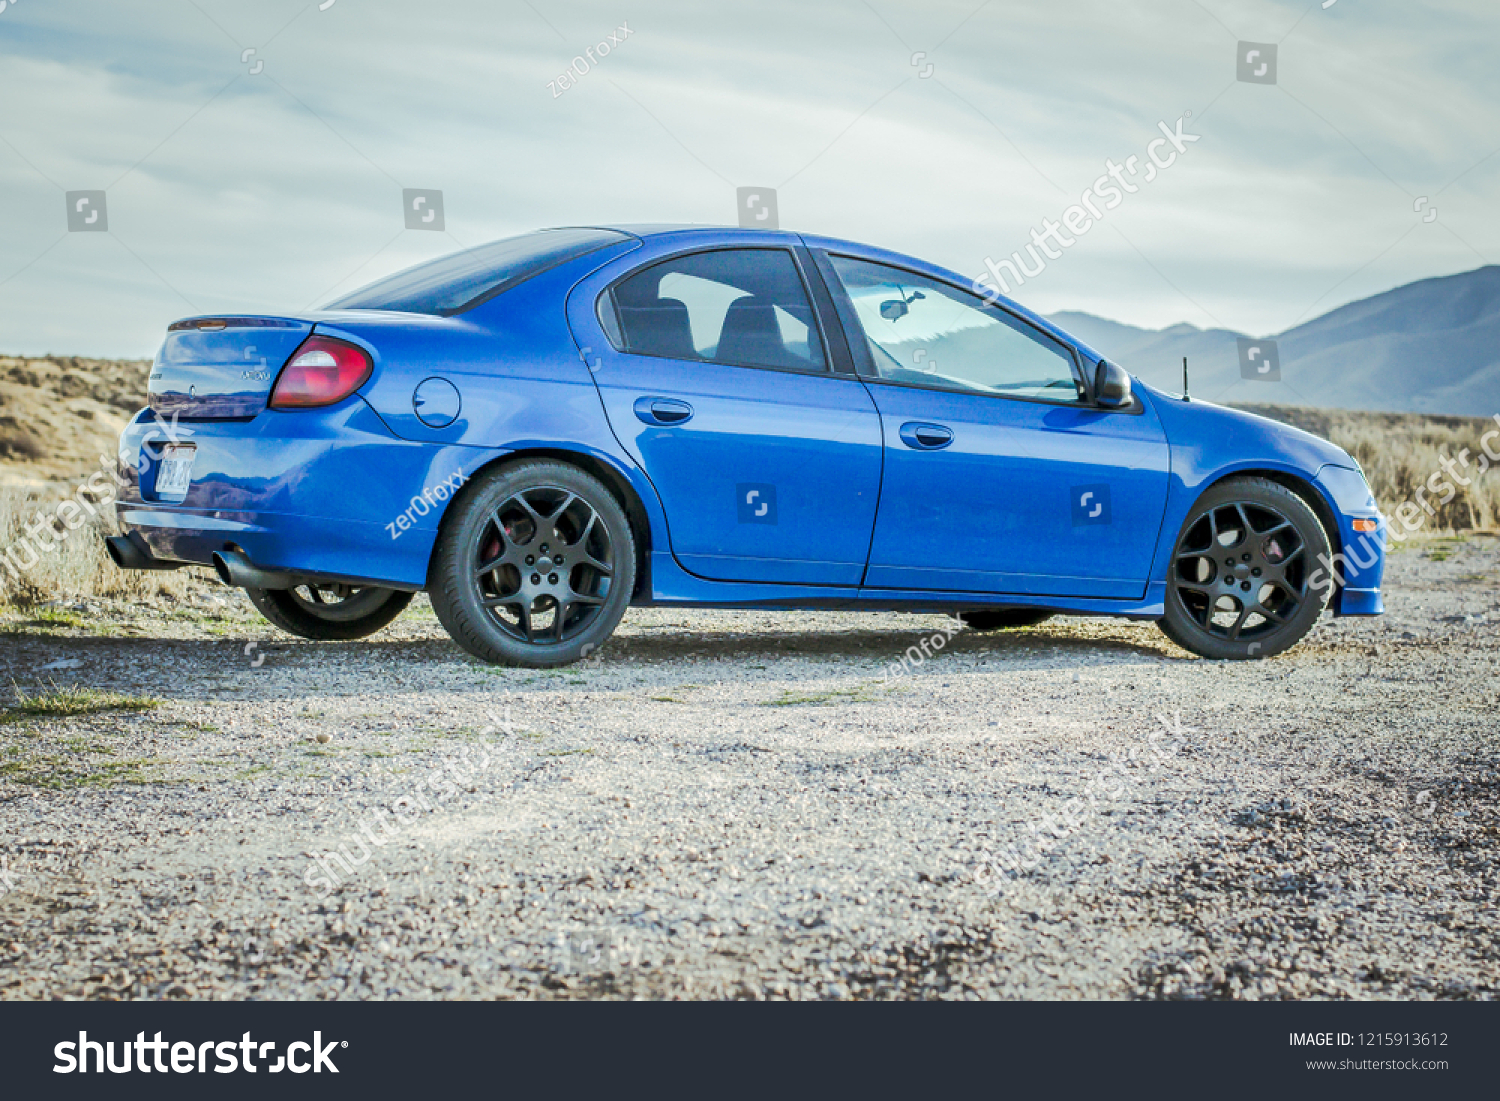 374 Dodge Neon Images, Stock Photos & Vectors | Shutterstock